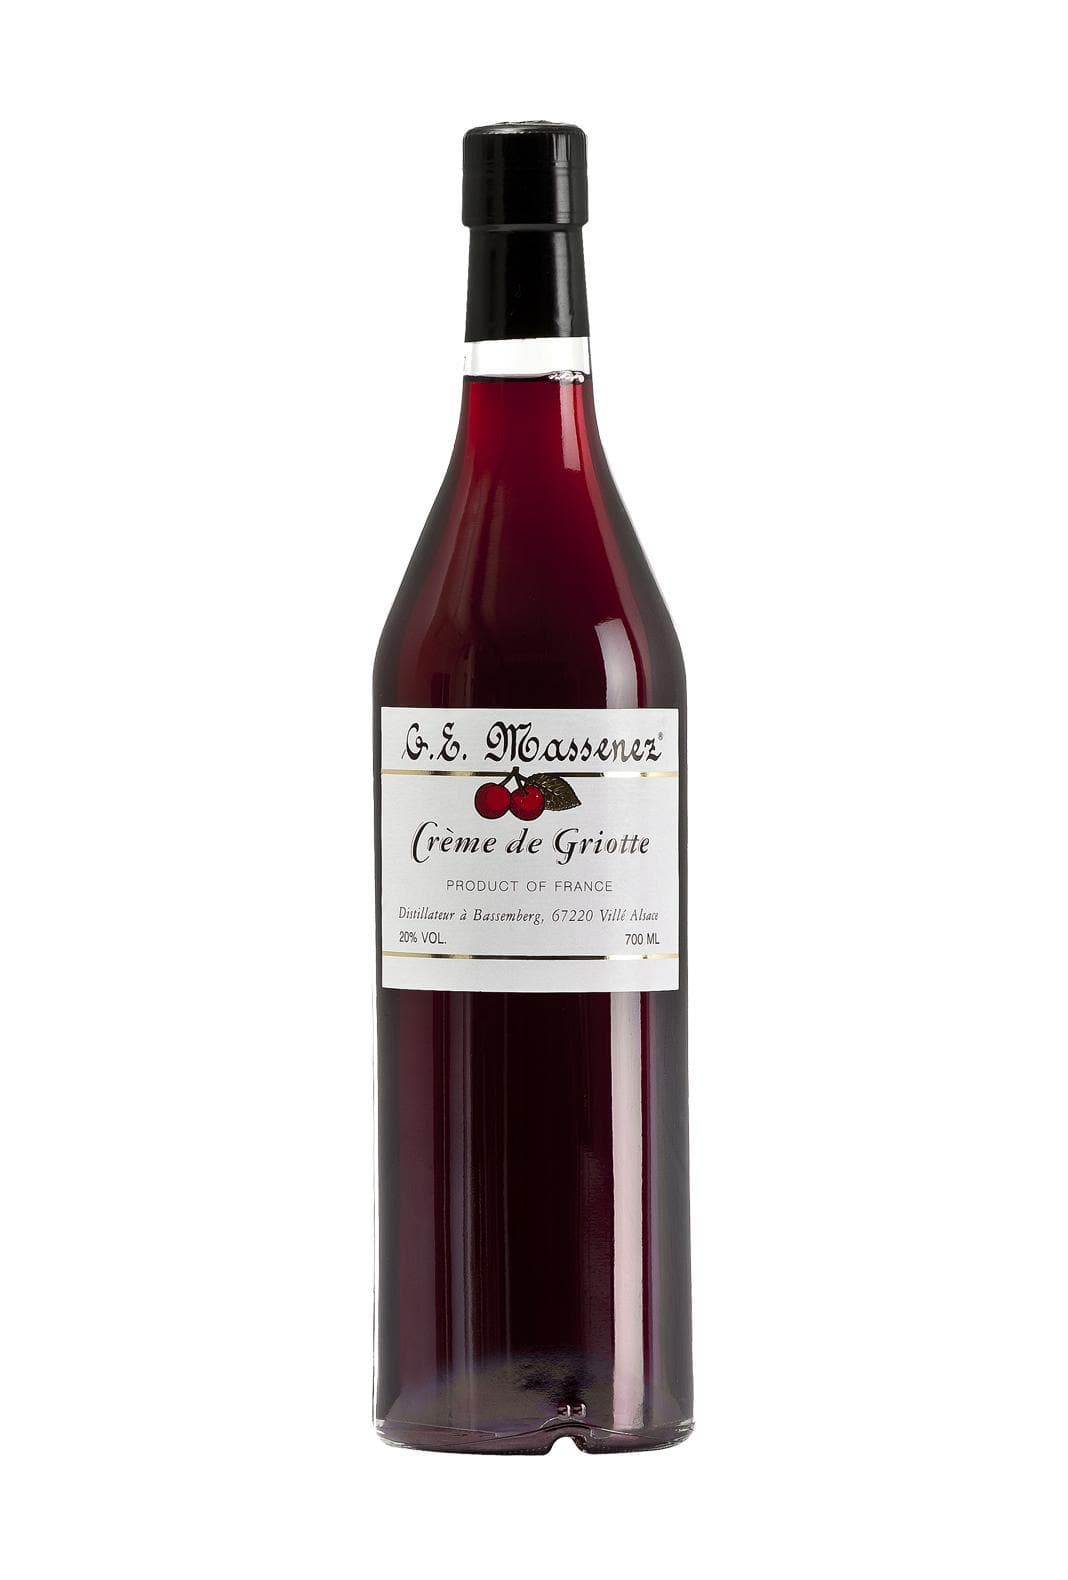 Massenez Liqueur Creme de Griotte (Morello Cherry) 20% 700ml | Liqueurs | Shop online at Spirits of France